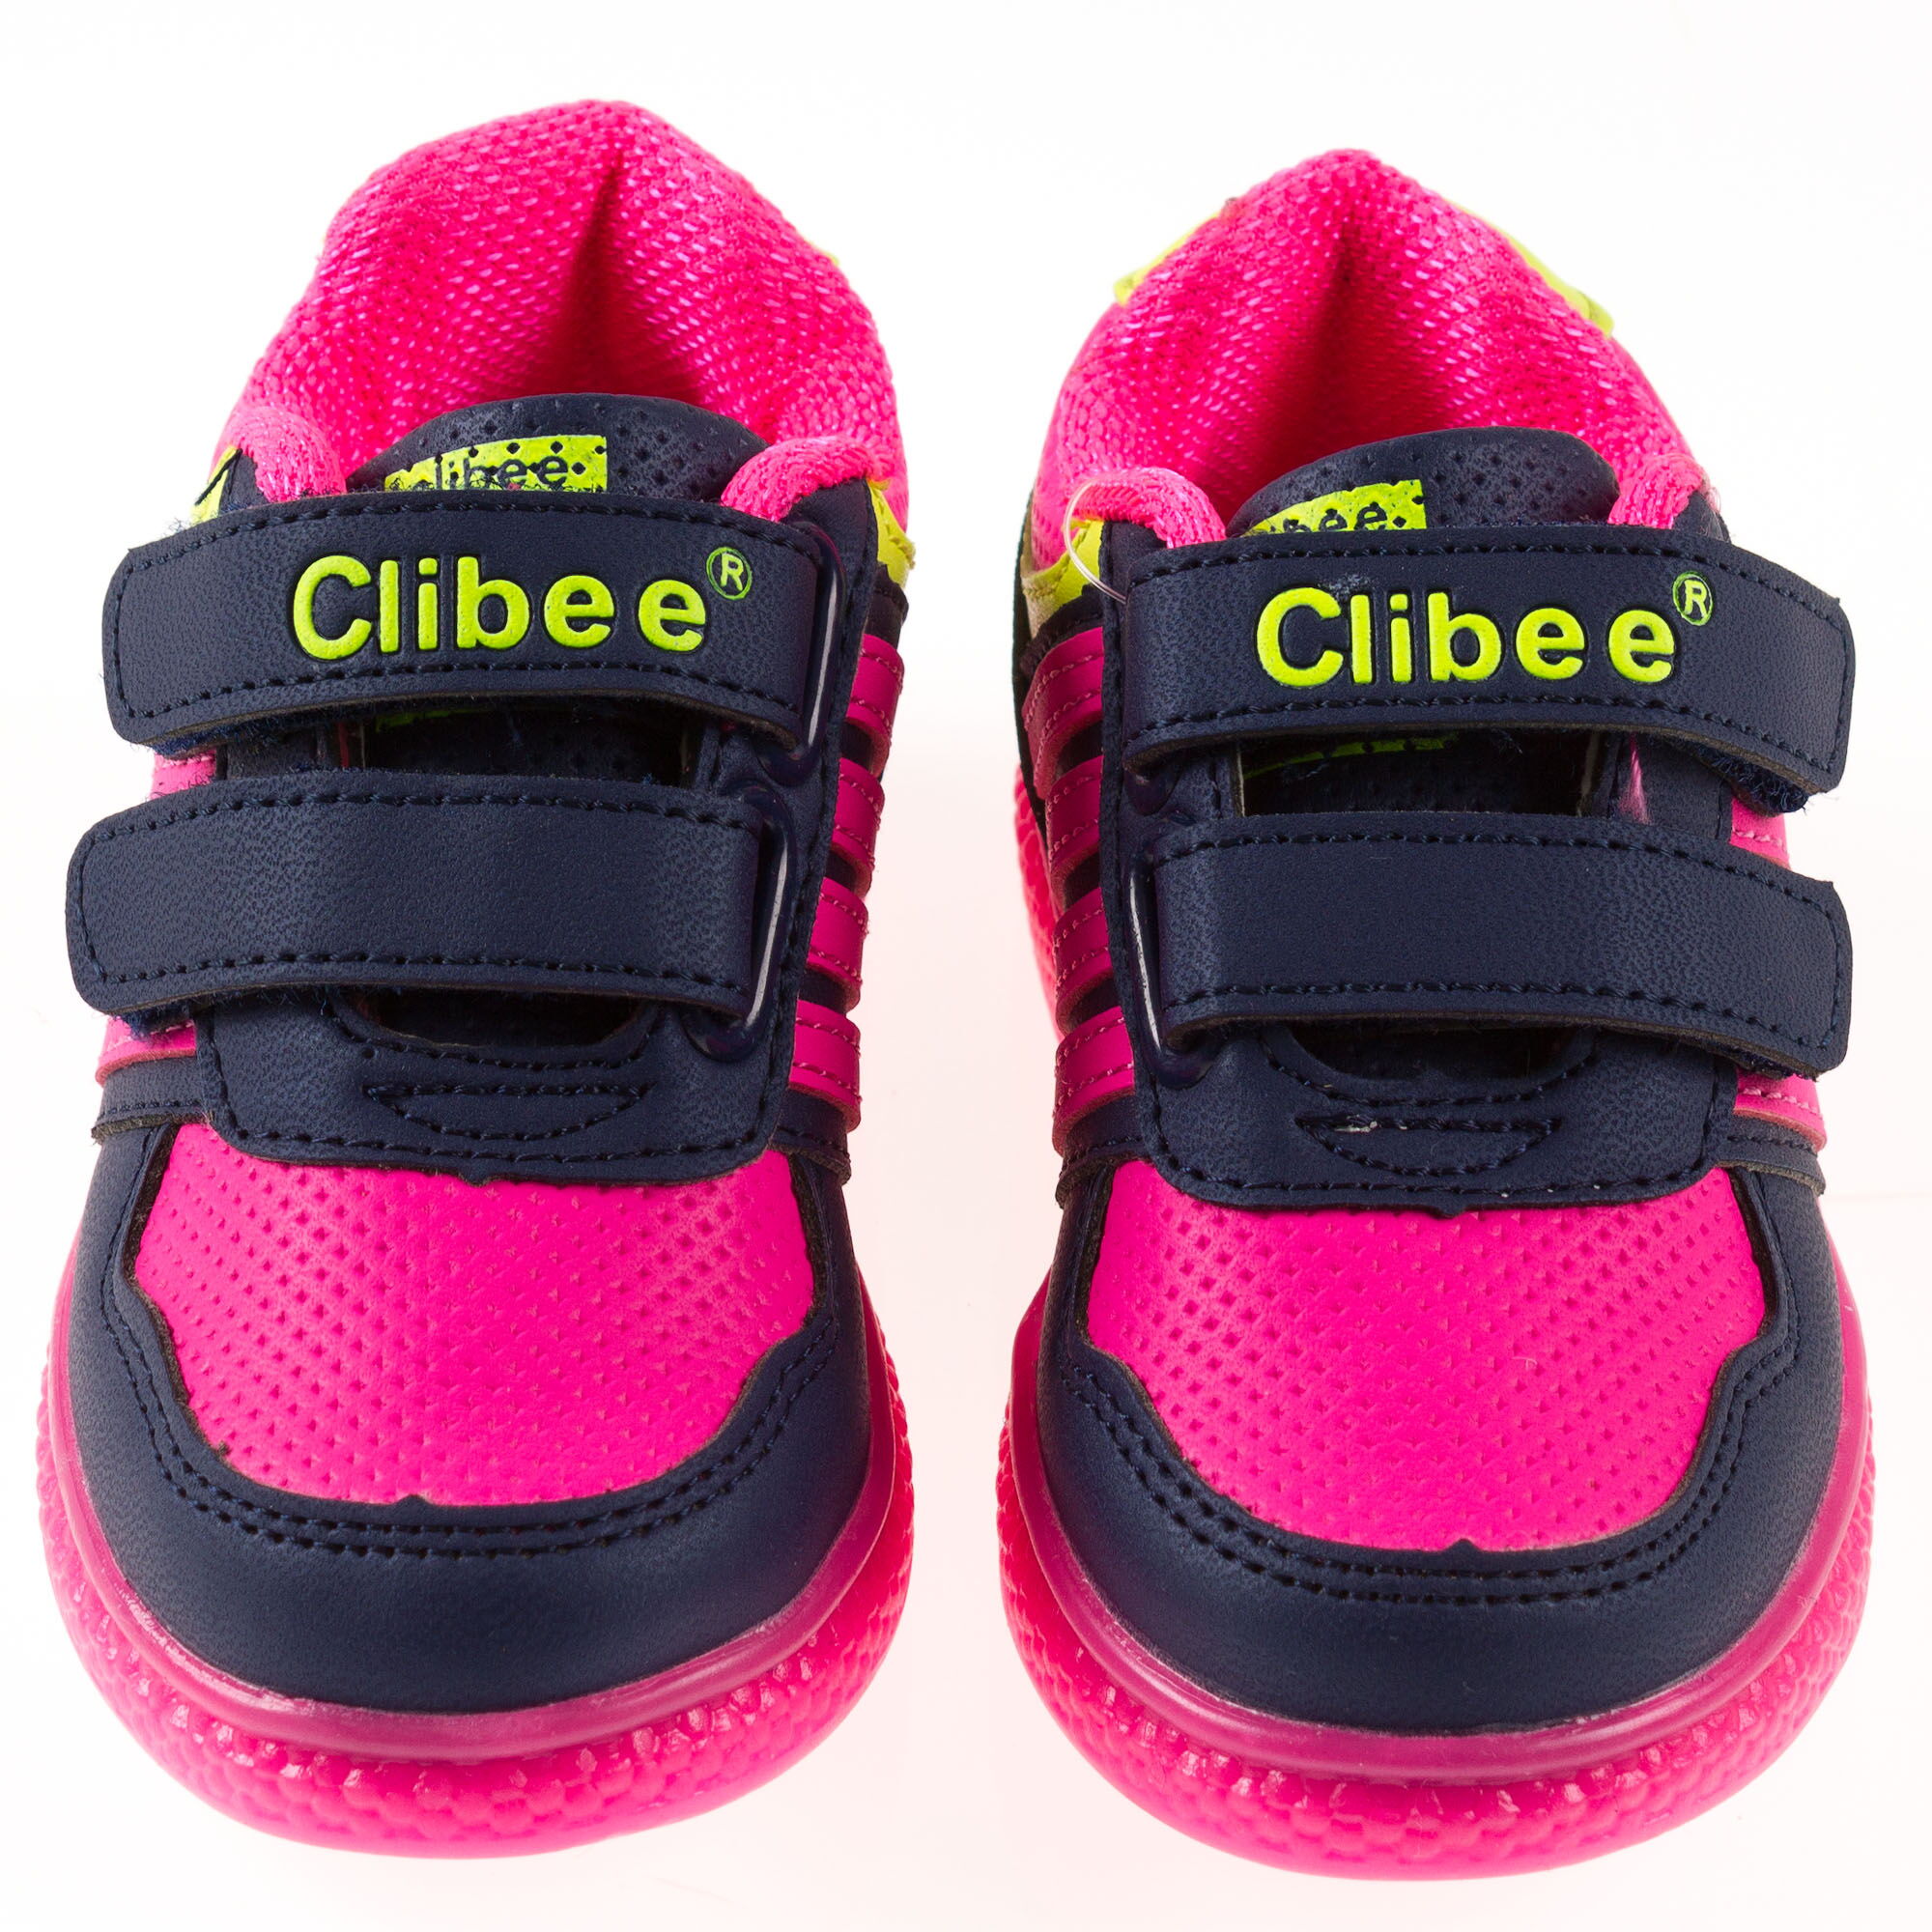 Кроссовки для девочки Clibee малиновые F-670/F-672 - размеры